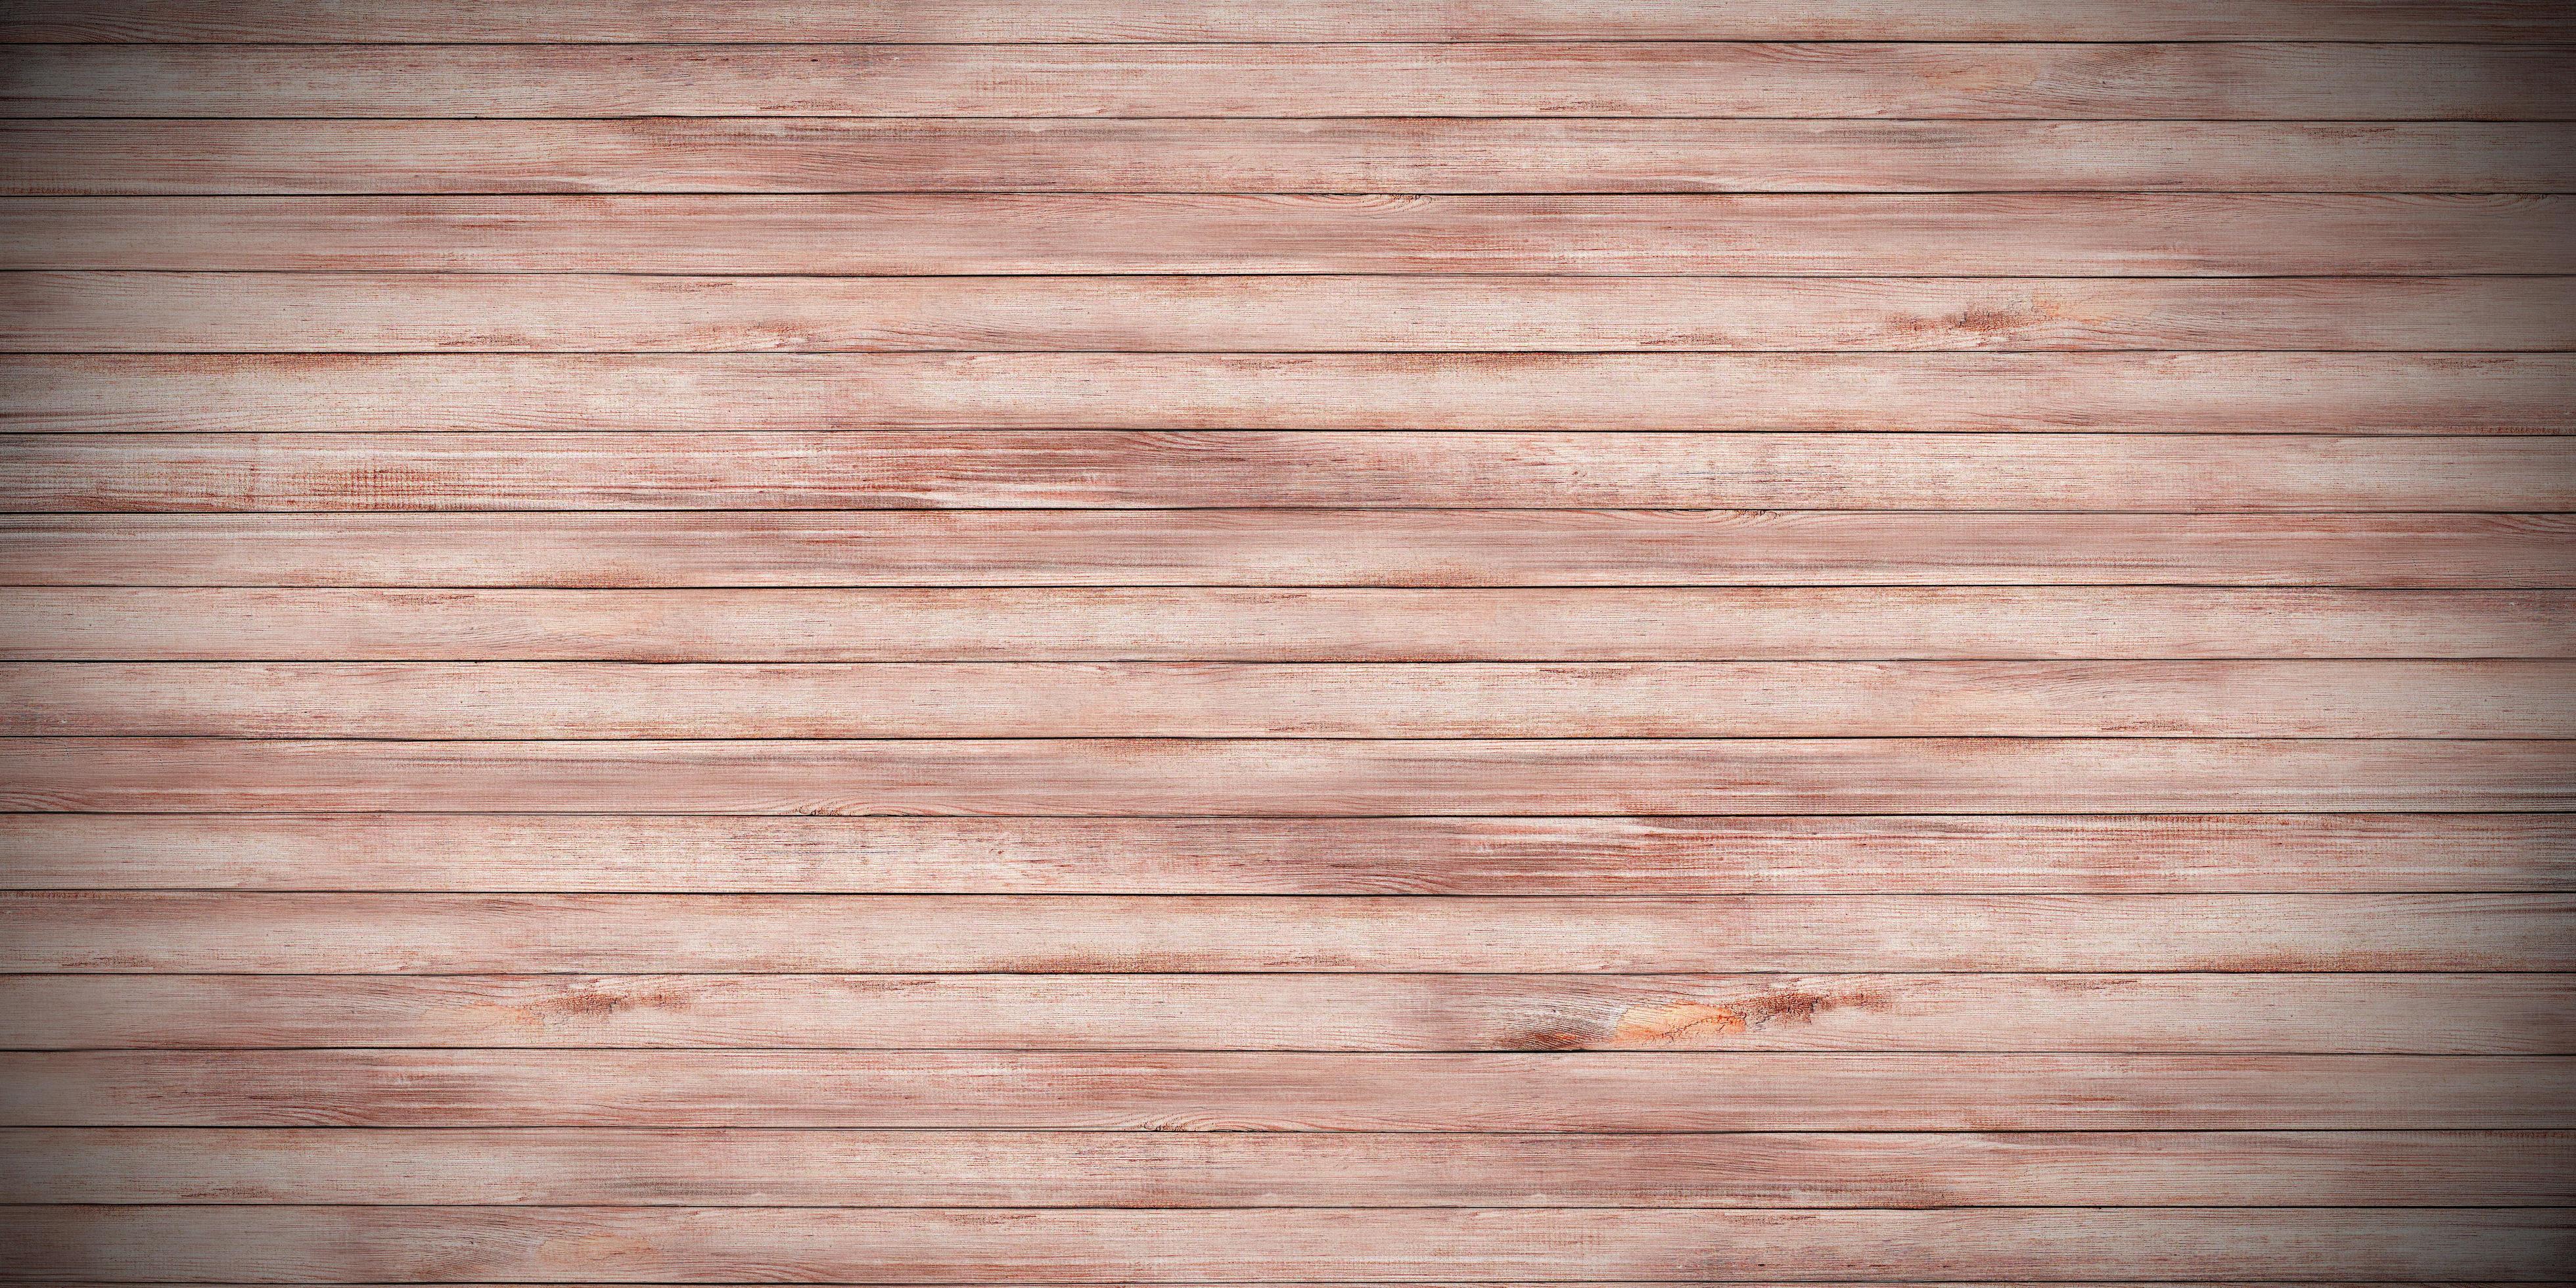 Với sàn gỗ cũ texture, bạn có thể cảm nhận được sự chân thật và đầy chất bụi của một không gian cổ kính. Sàn gỗ nứt nẻ đầy sự mộc mạc và kinh nghiệm sử dụng, làm cho người nhìn thấy đầy ấm áp và mộc mạc.